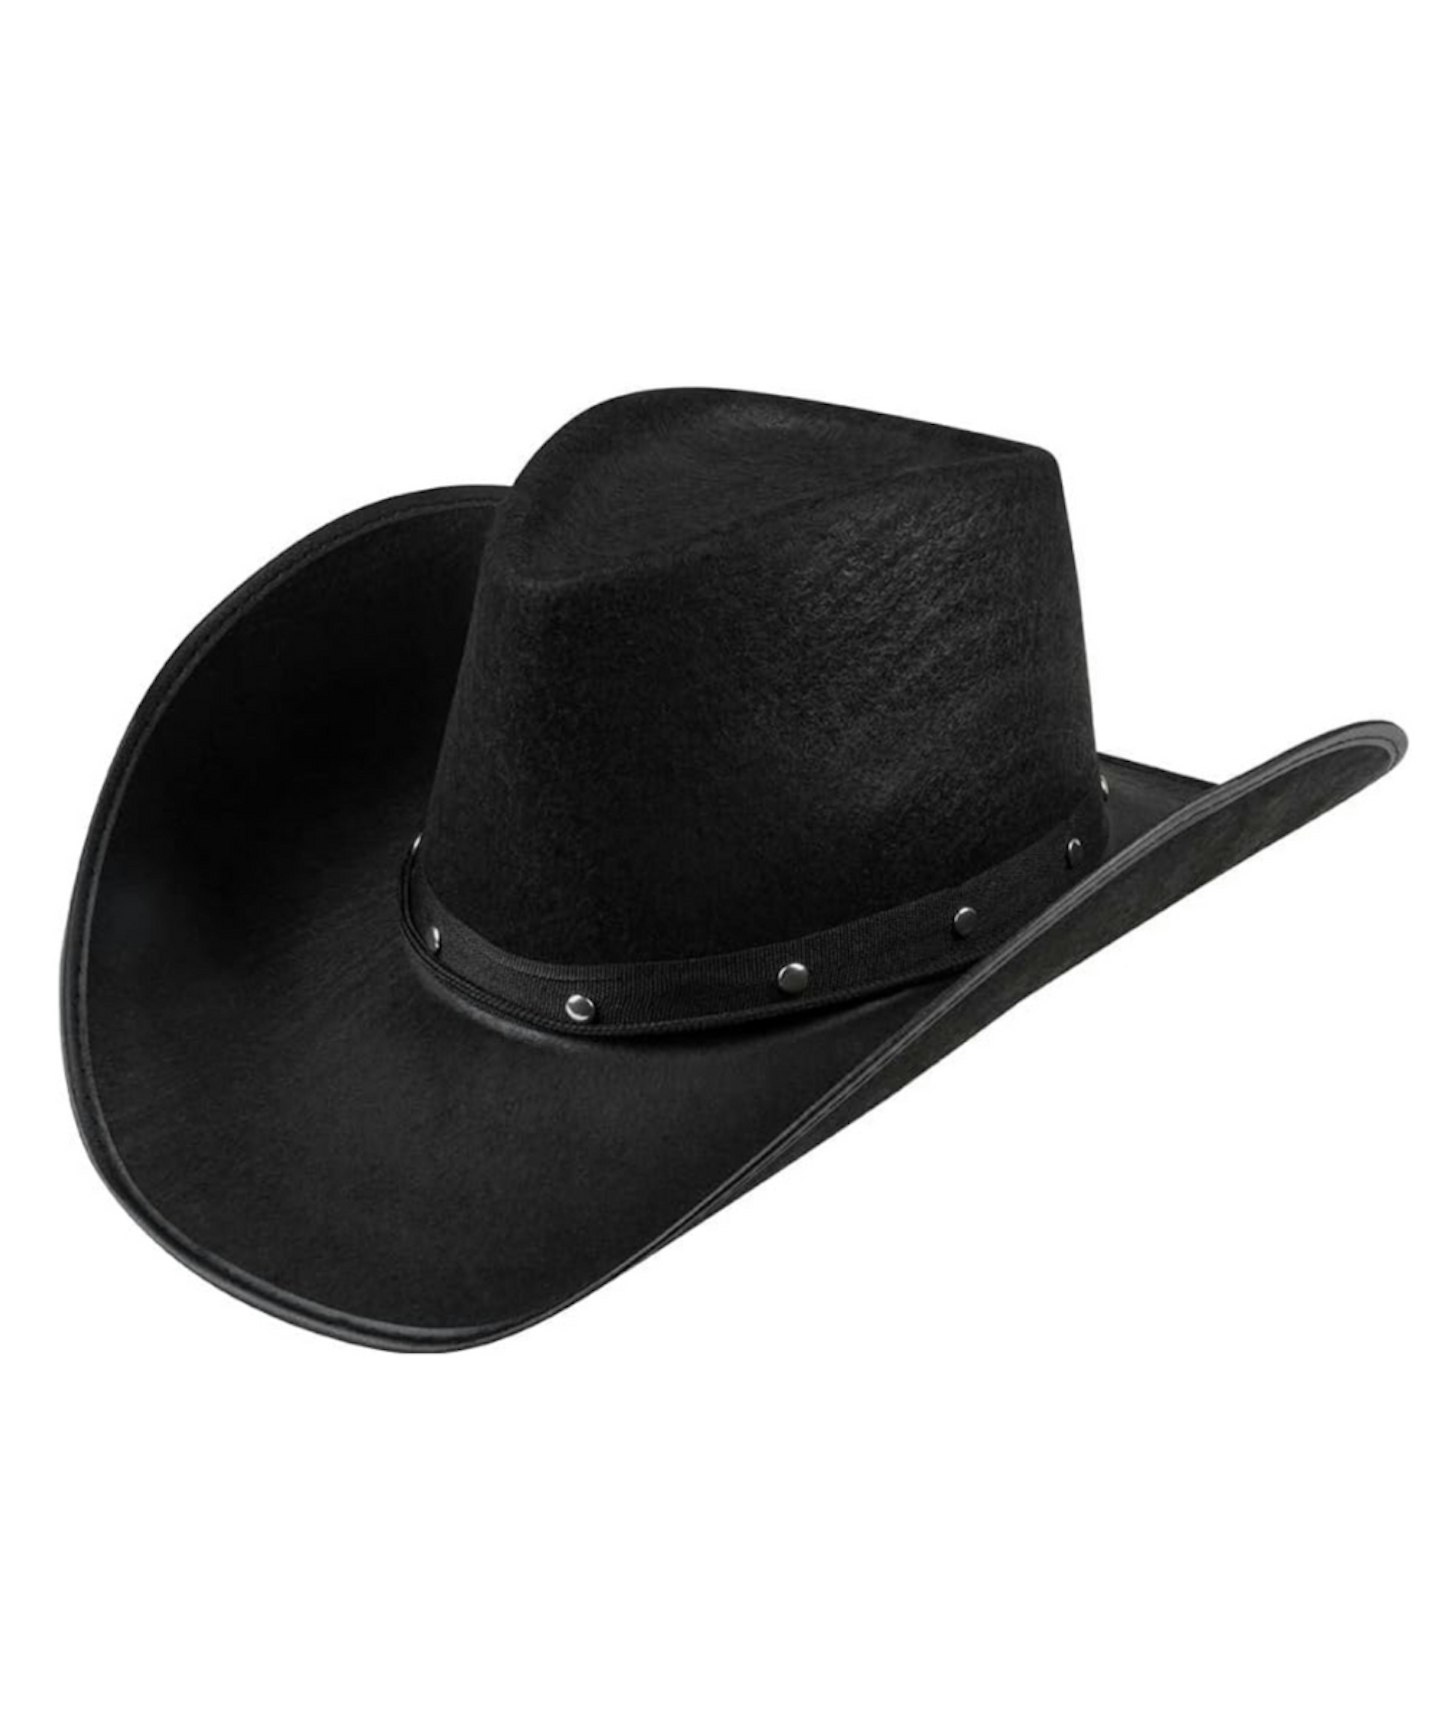 Black Cowboy Hat for Adult